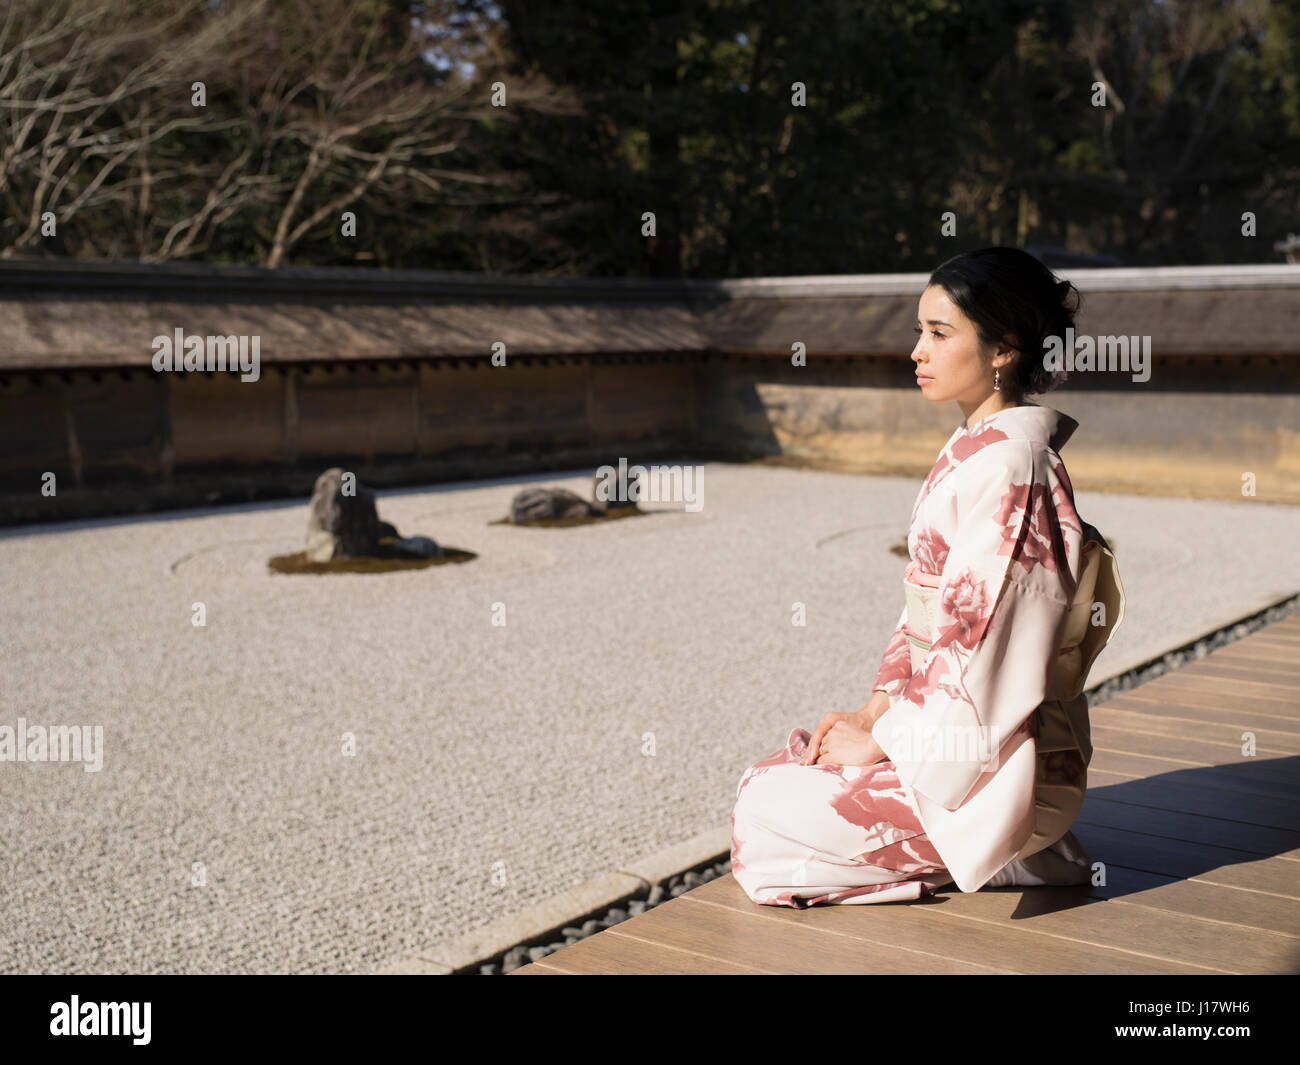 Jovencita japonesa en kimono se arrodilla junto al jardín de rocas en el  Templo Ryoan-ji, en Kyoto. Uno de los mejores ejemplos de coches-niwa  jardín de piedras. Meditatio Zen Fotografía de stock -